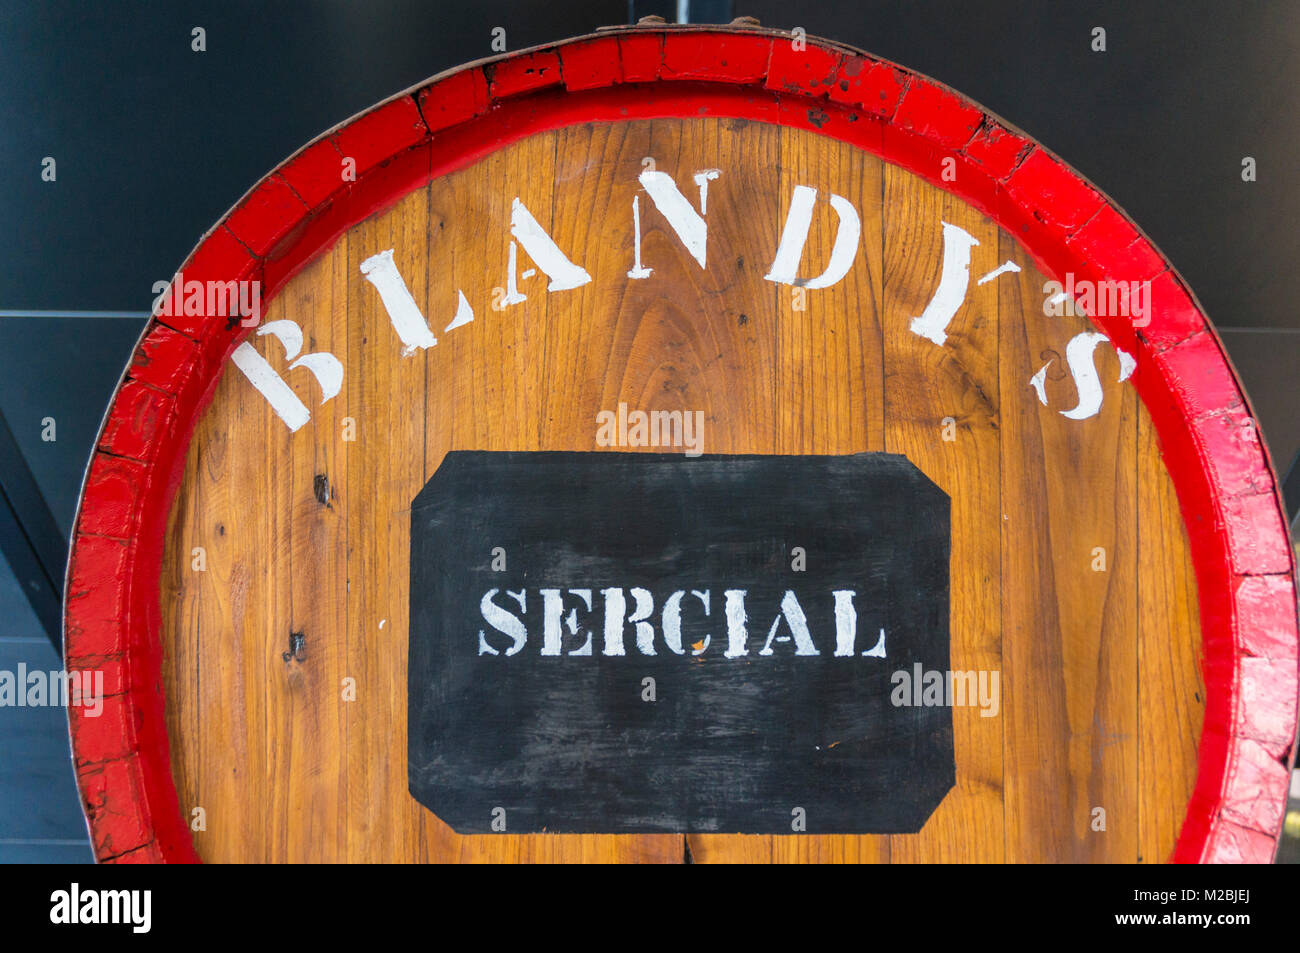 MADEIRA PORTUGAL MADEIRA Wein Faß vom Erzeuger Blandy's Wine cask Sercial weisse Rebsorte für Madeira Wein Produktion Stockfoto